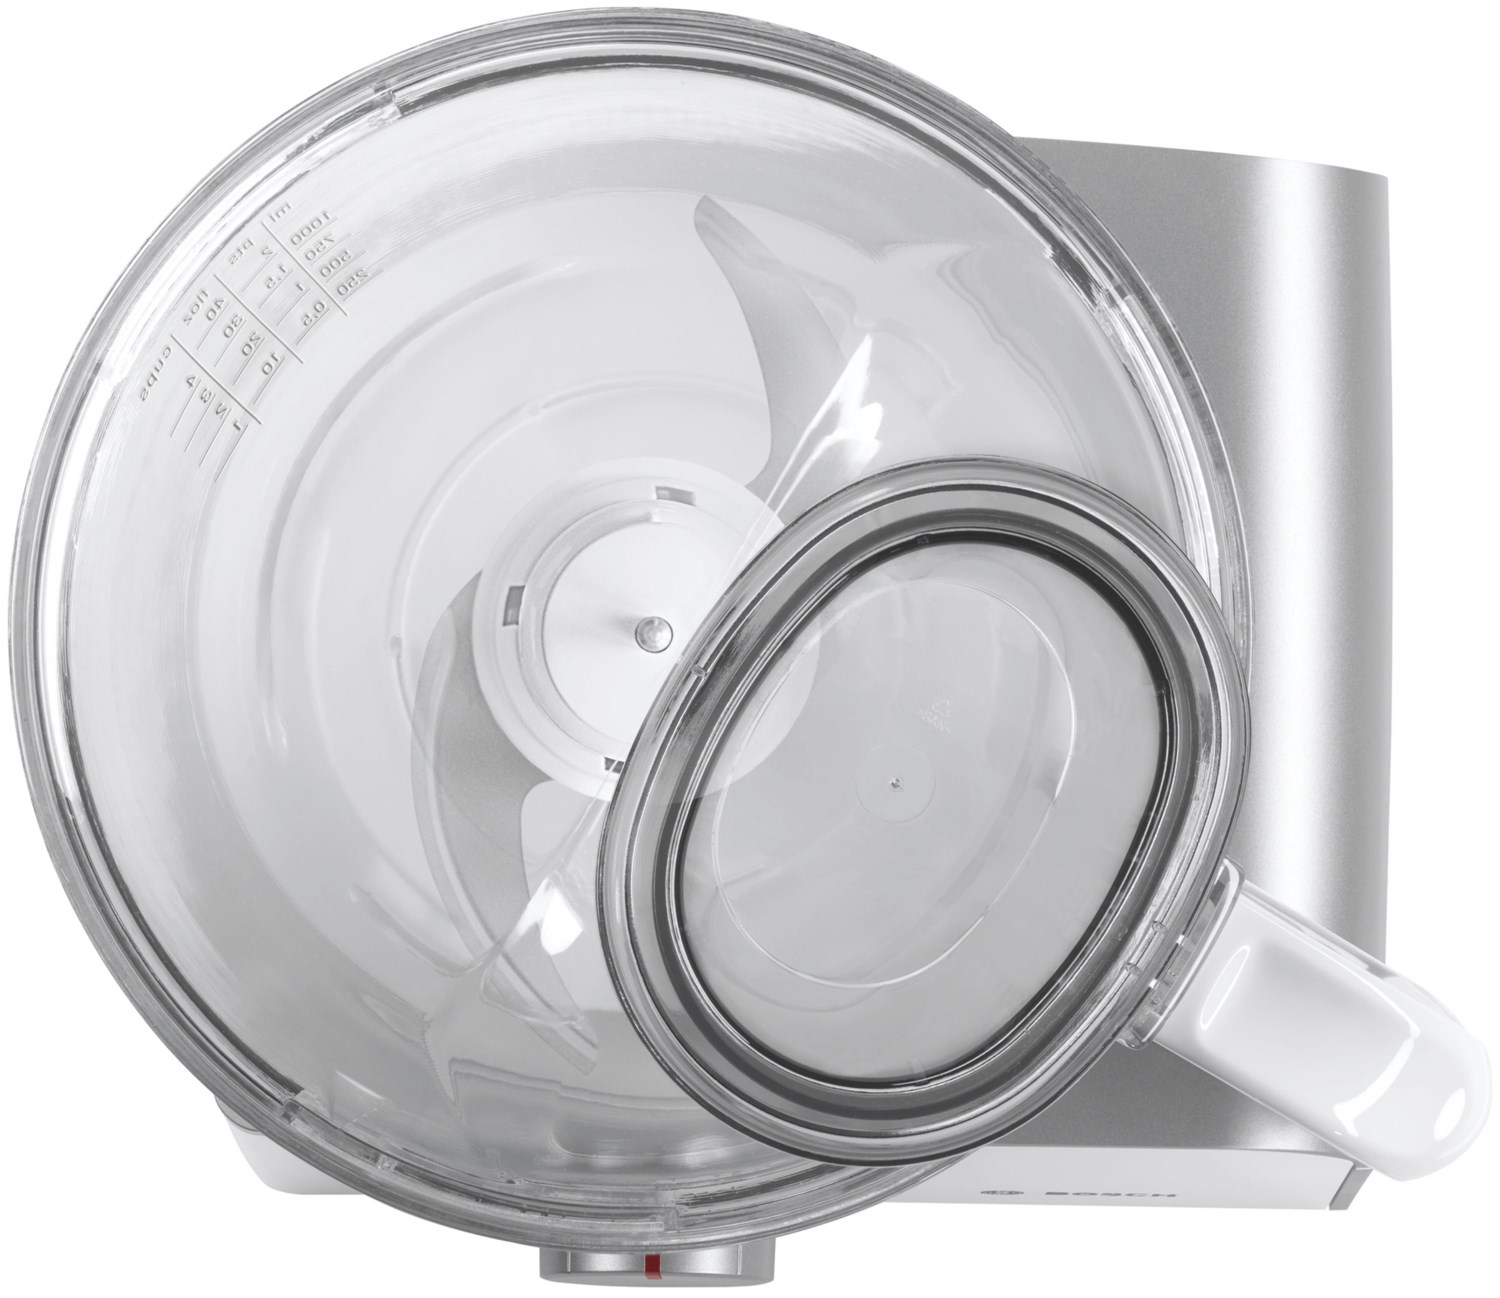 Bosch MCM4 Kompakt-Küchenmaschine Styline weiß/grau